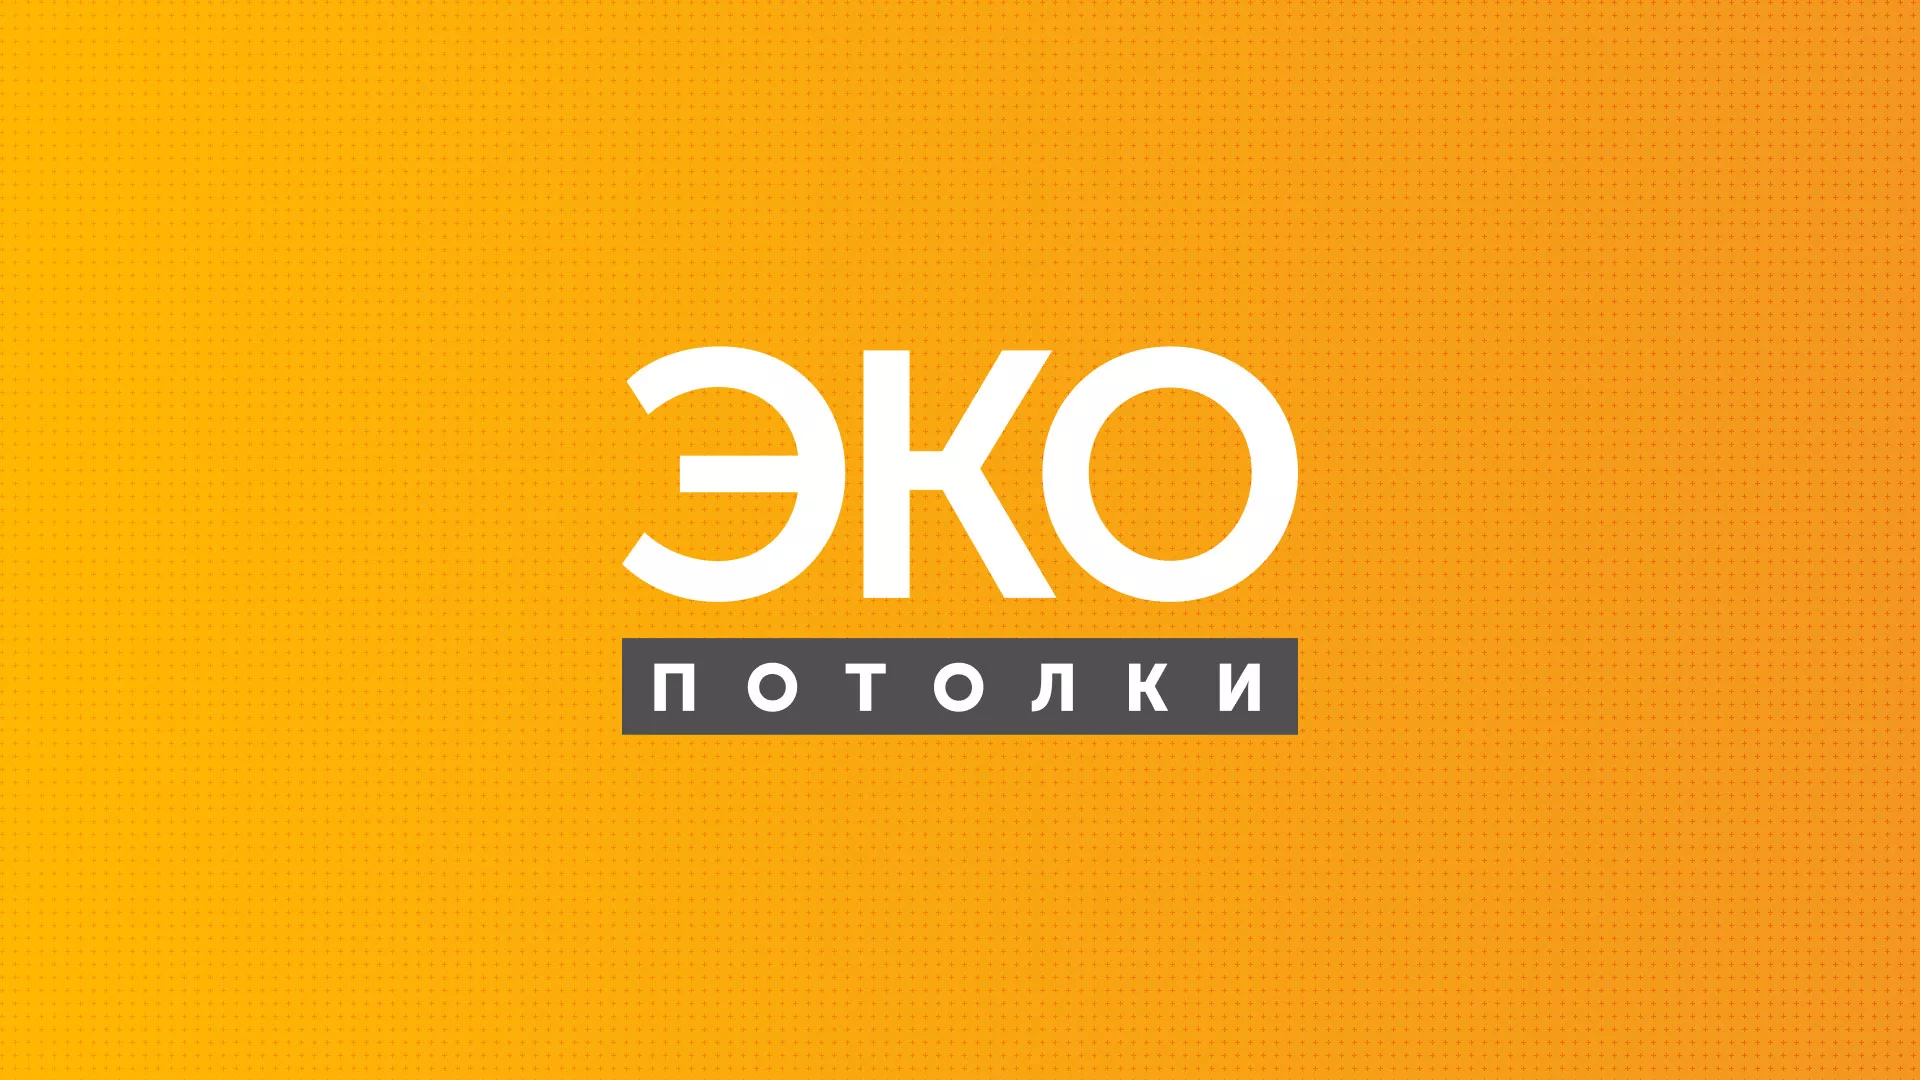 Разработка сайта по натяжным потолкам «Эко Потолки» в Каменск-Шахтинске